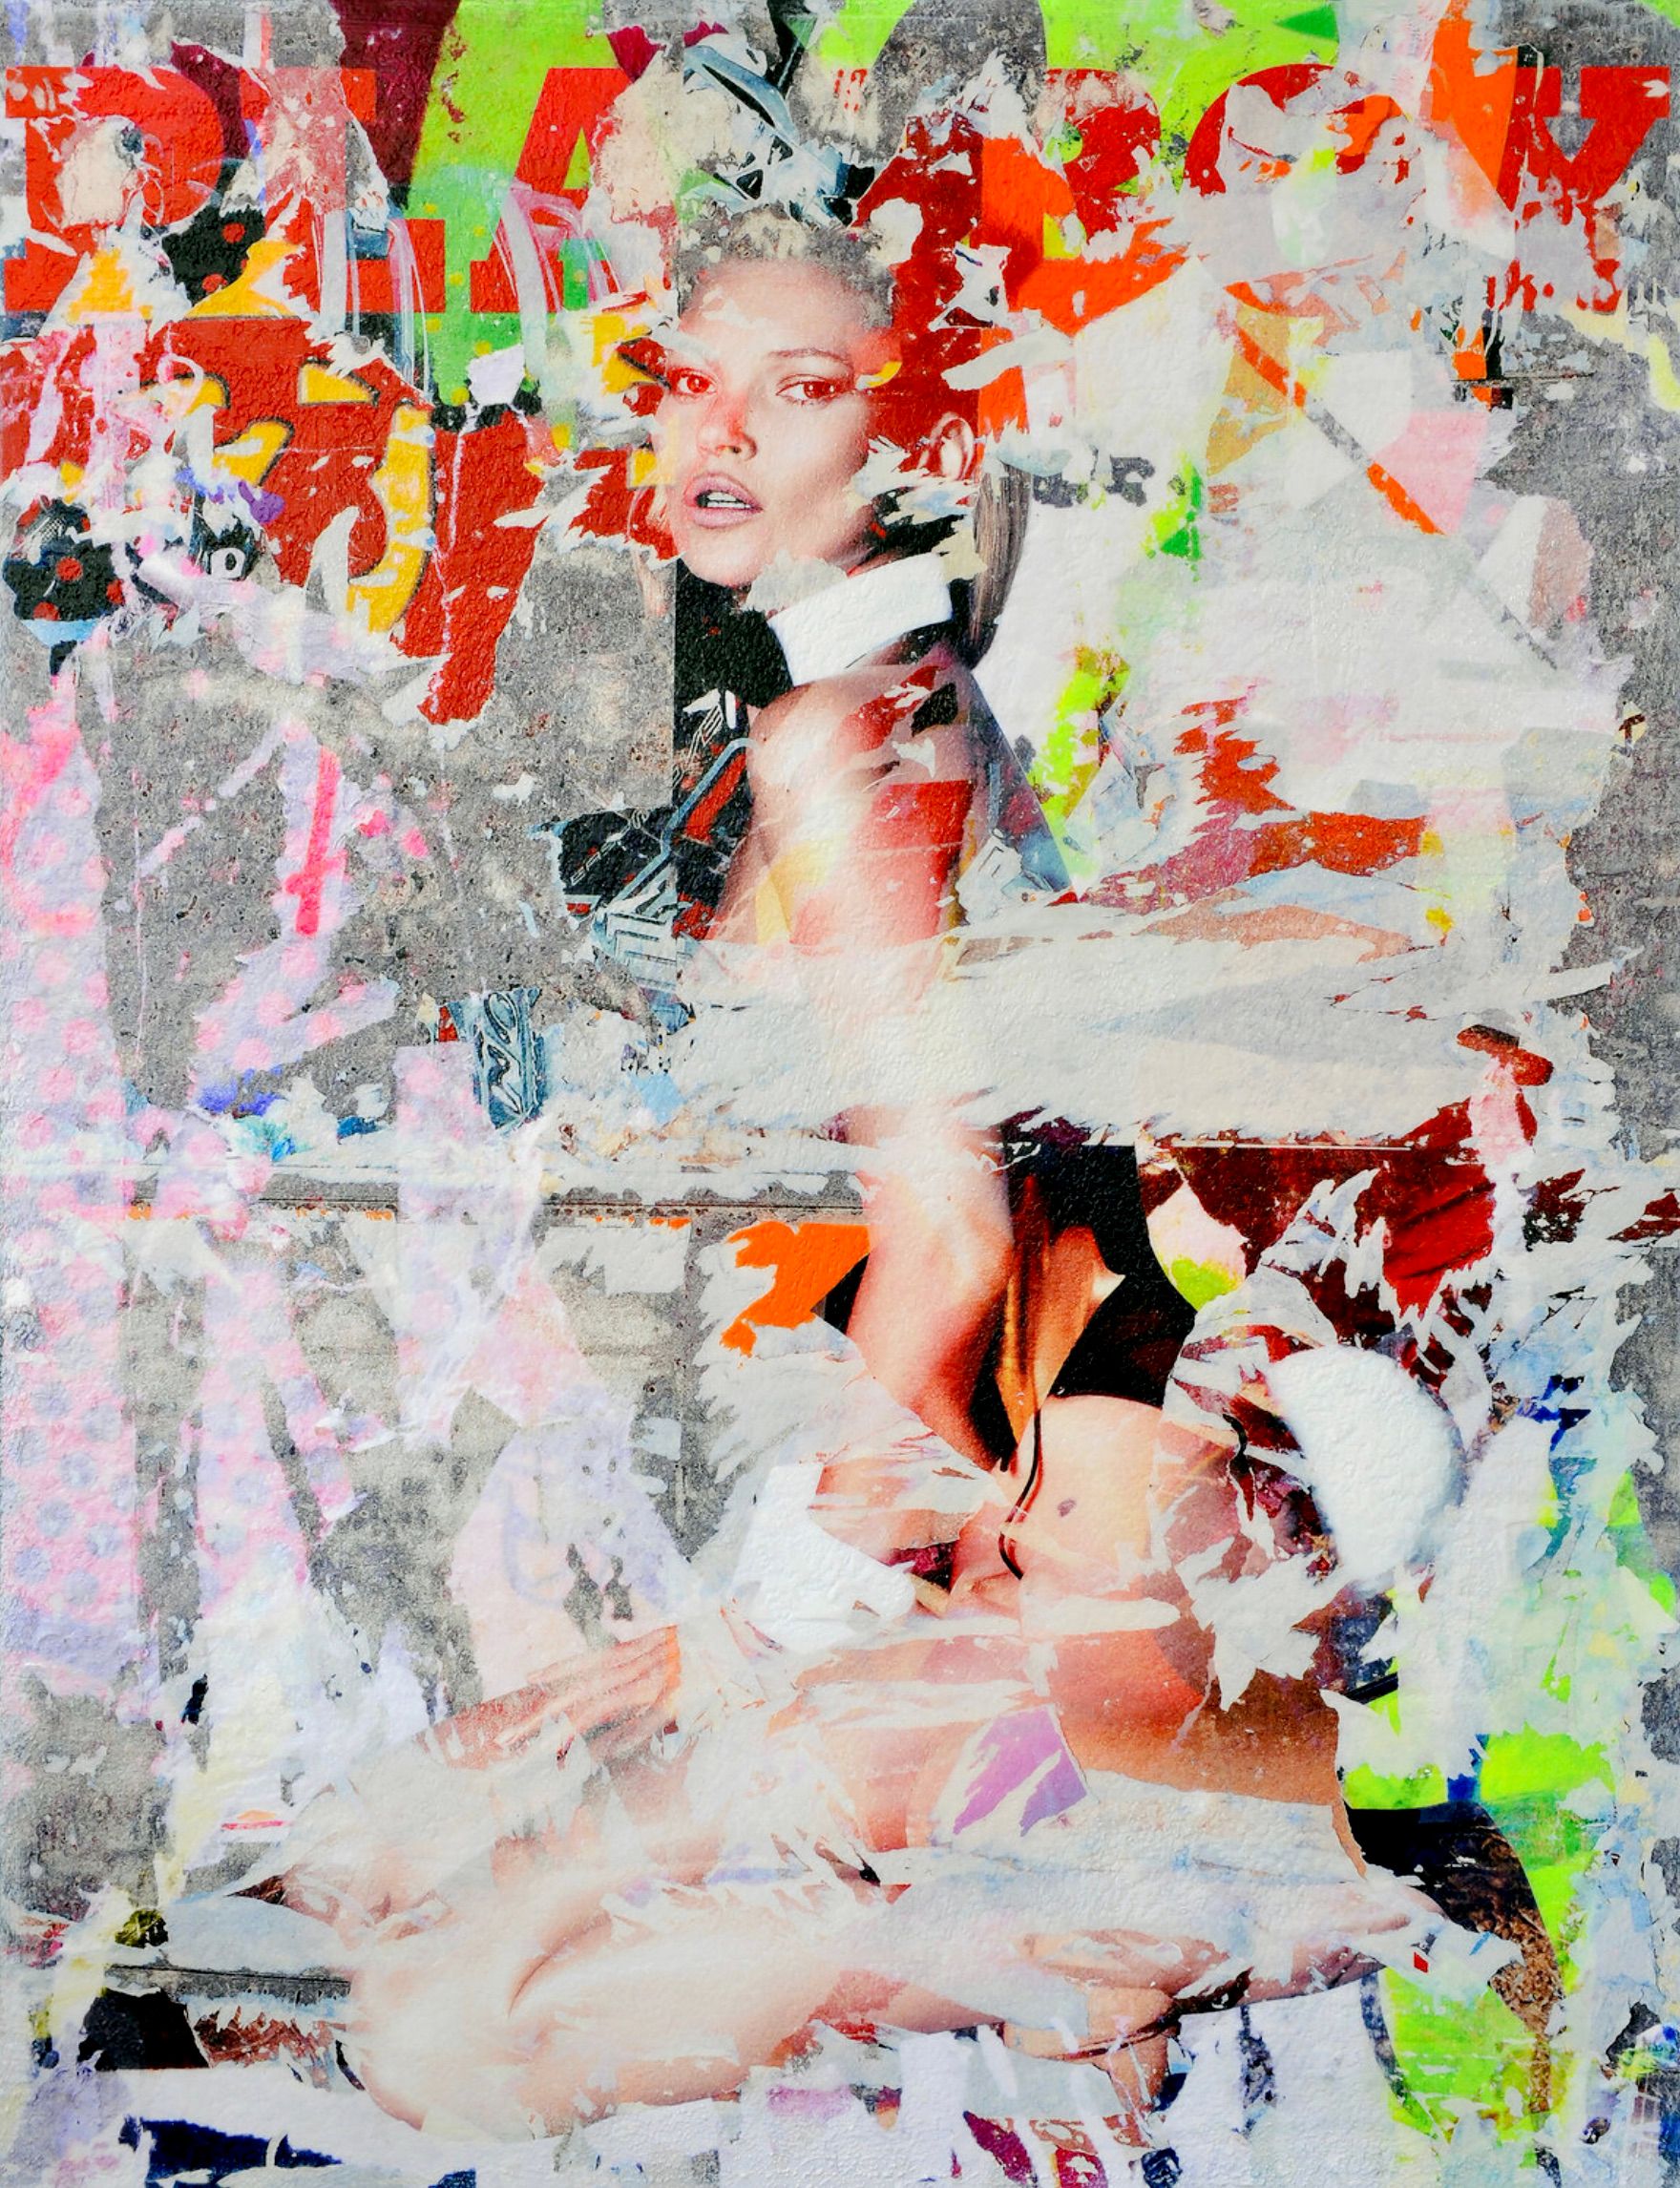 Kate Moss playboy" de Karin Vermeer es una combinación y procesamiento digital de fotografías, pinturas y collage en nuevas y originales obras de arte callejero en color.